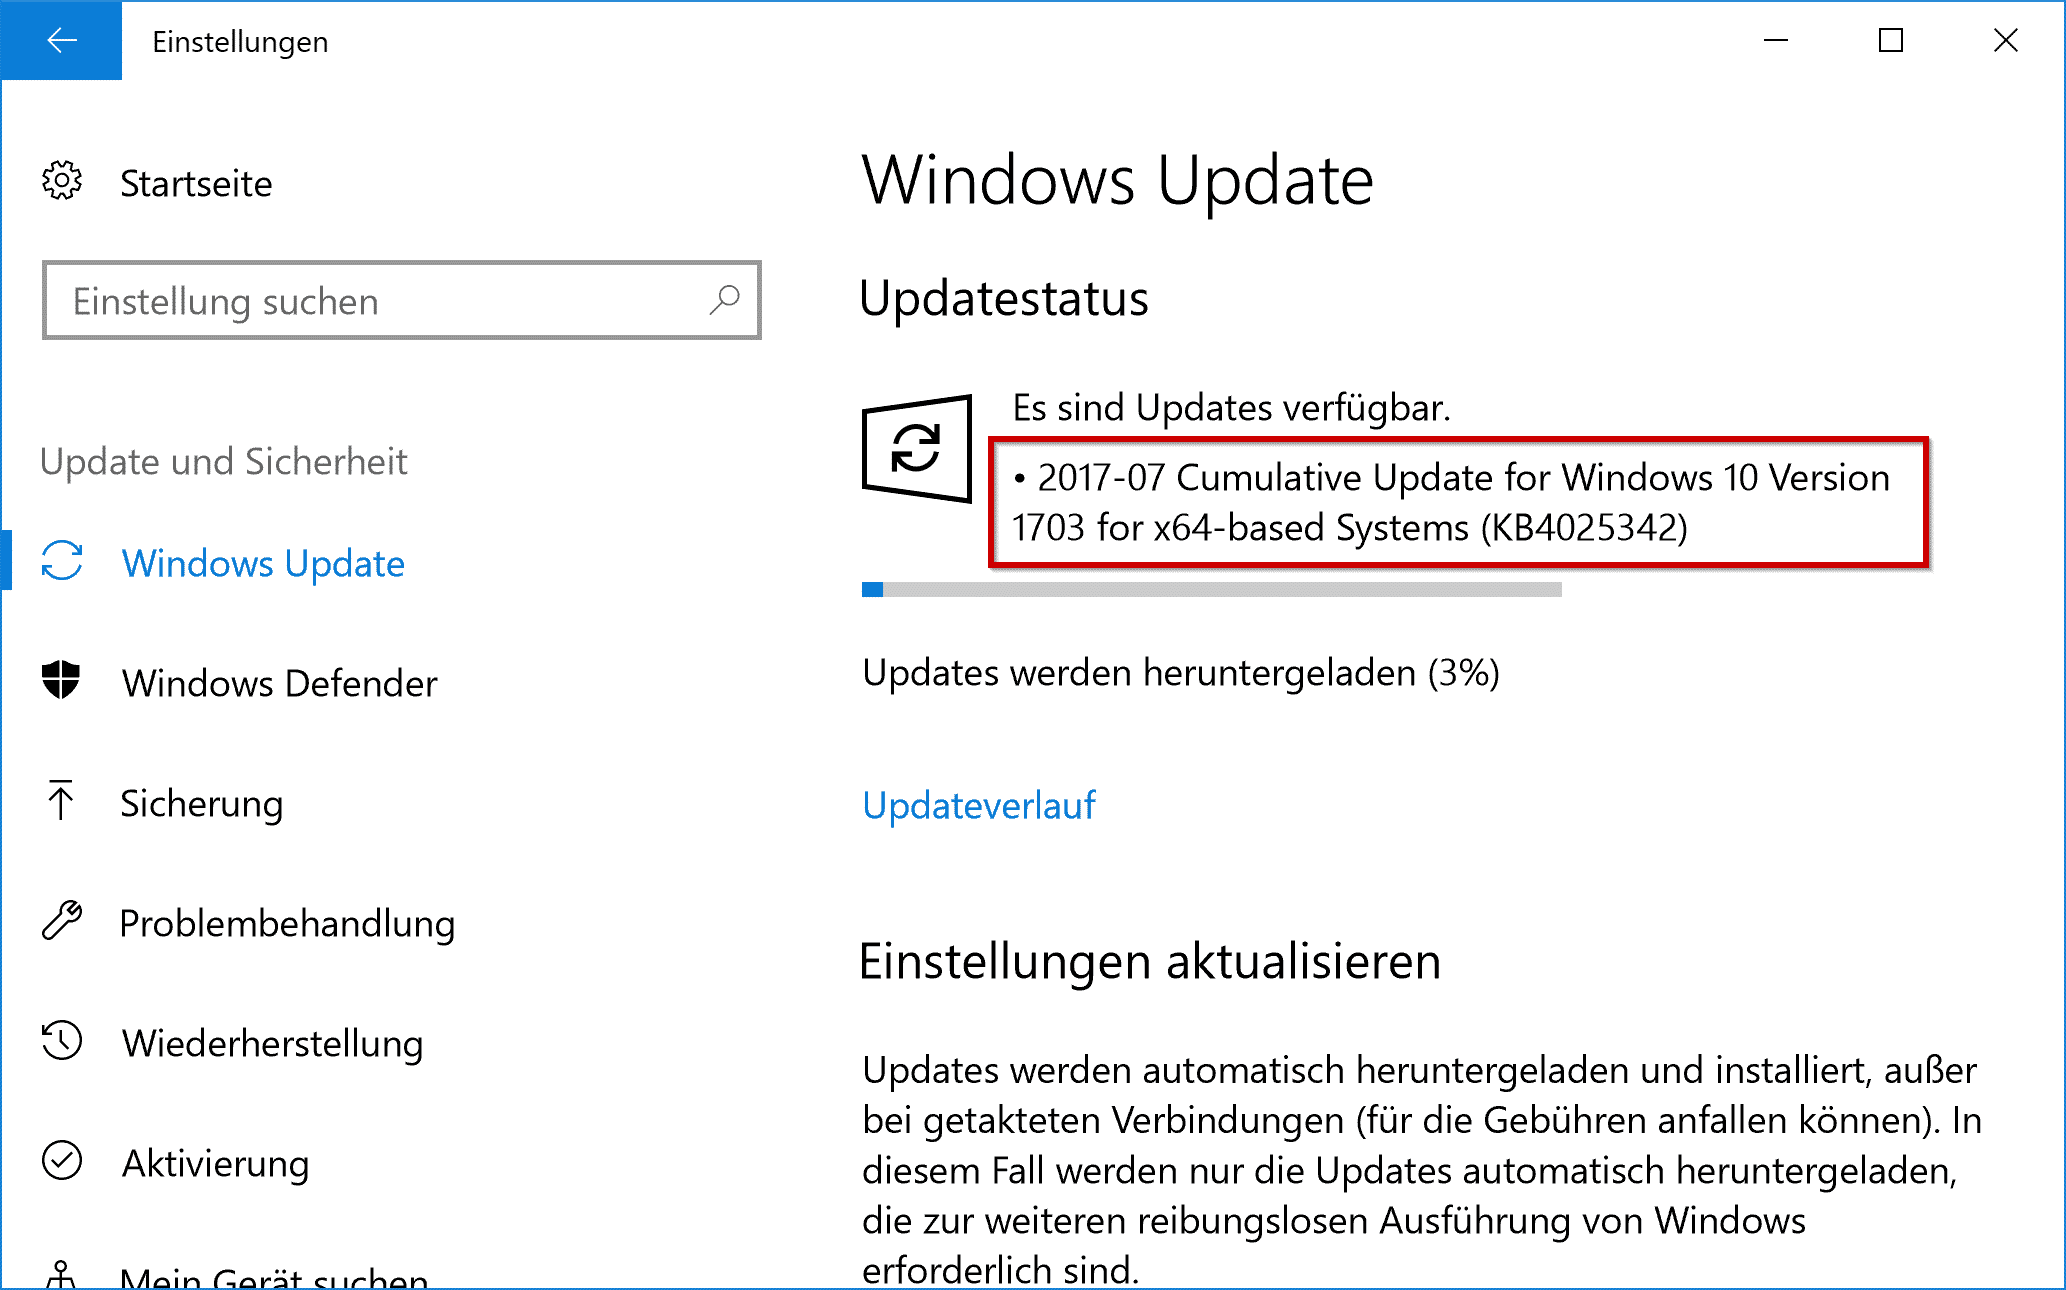 KB4025342 Cumulative Update for Windows 10 Version 1703